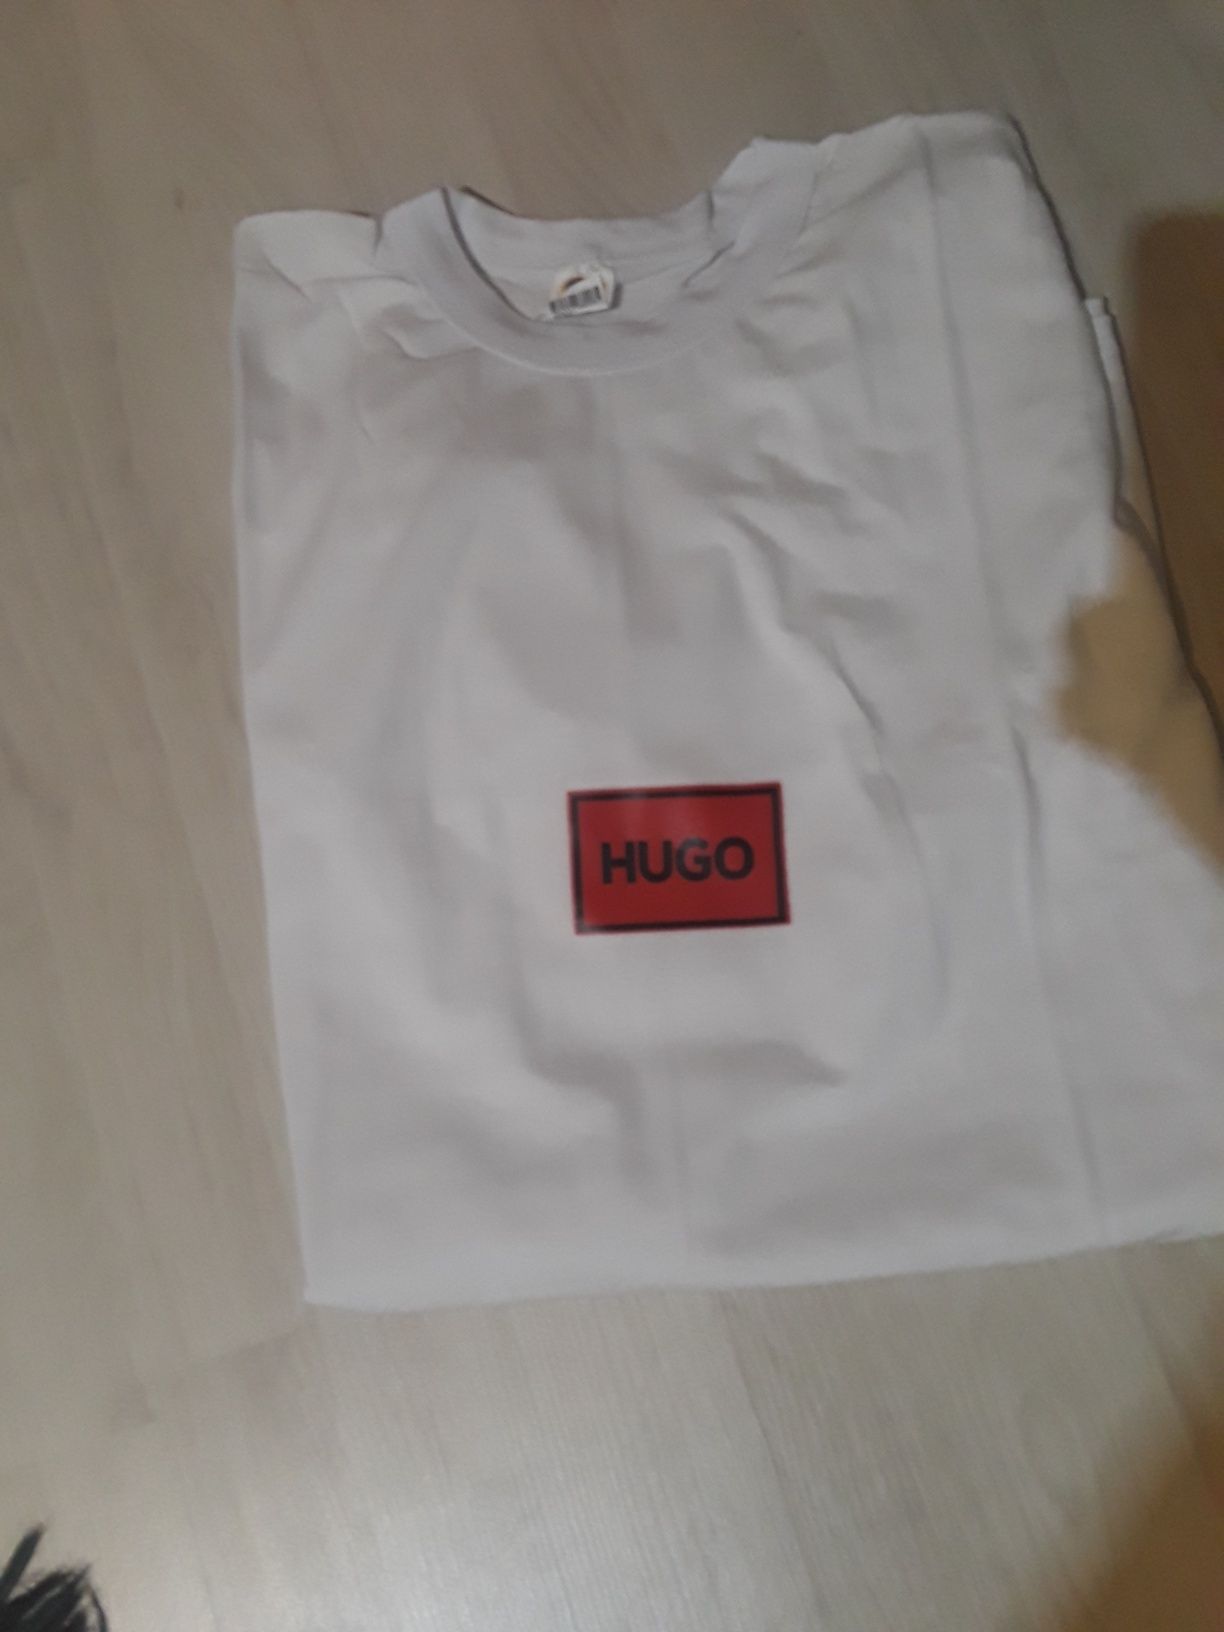 Trening baieti/barbati Nike Adidas Hugo cu tricou cadou!